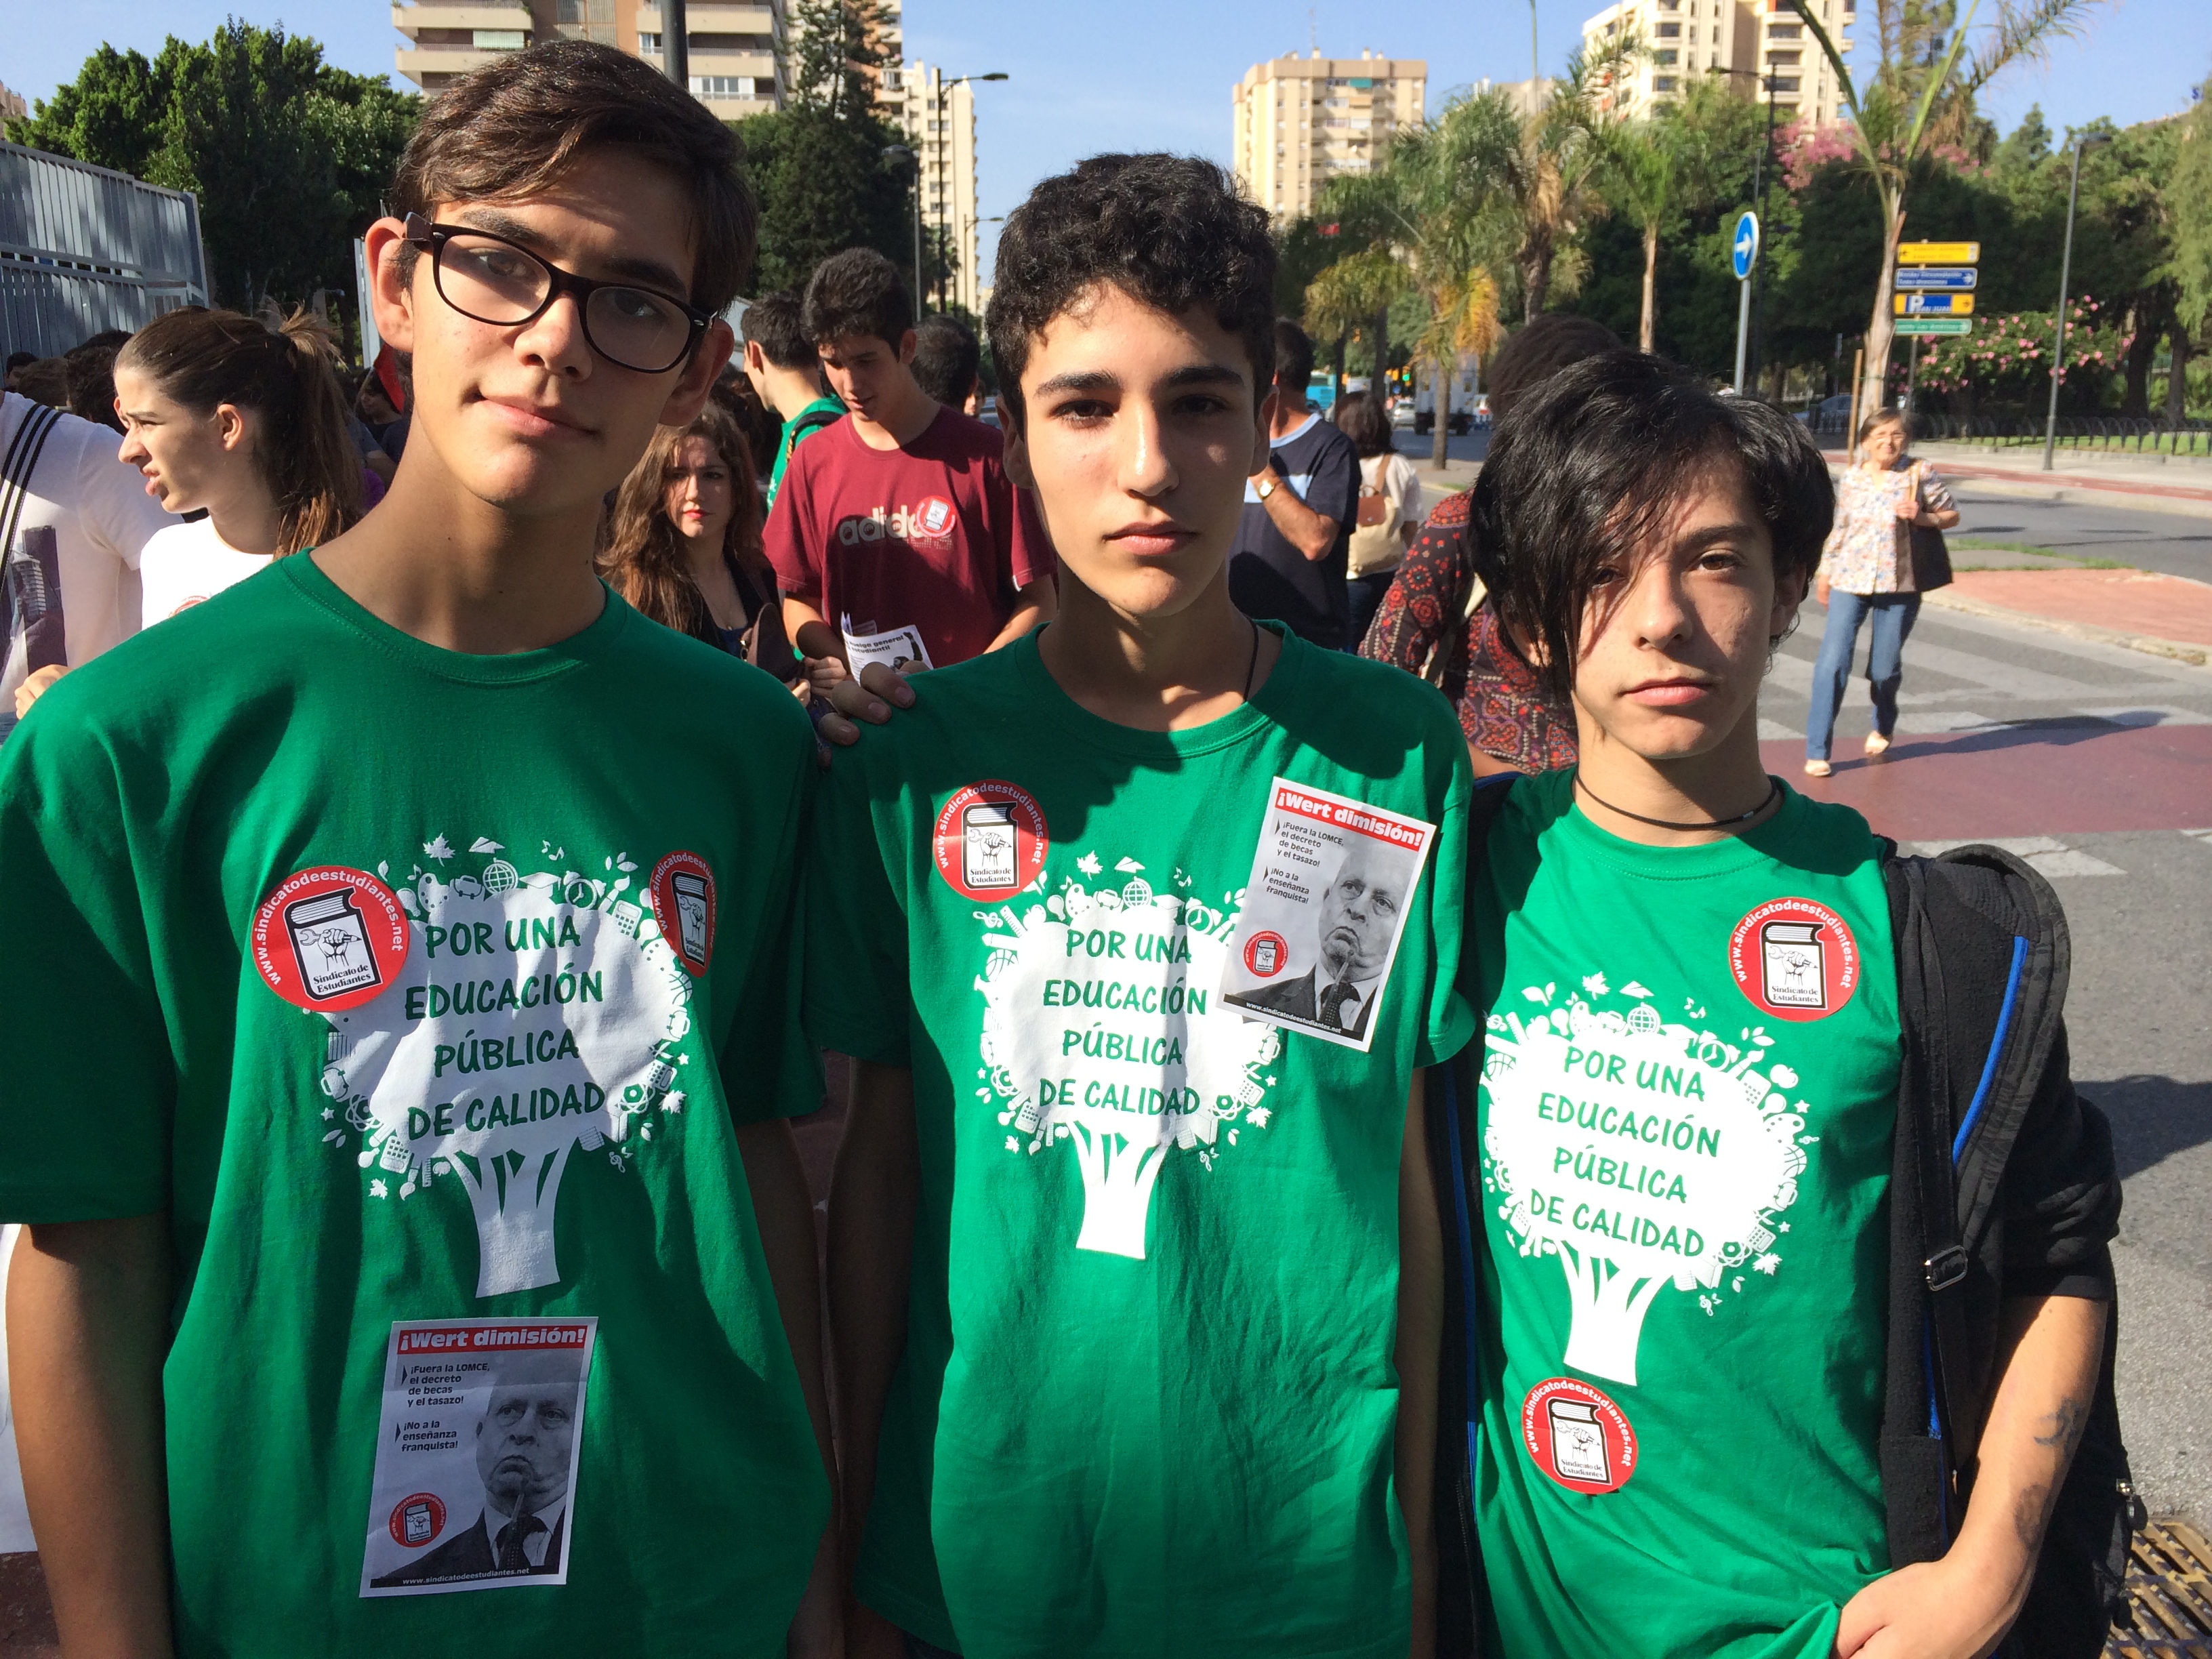 En Madrid, miles de estudiantes han marchado desde Atocha a la Puerta del Sol equipados con camisetas verdes y coreando lemas contra la Lomce y el ministro de Educación, José Ignacio Wert. 